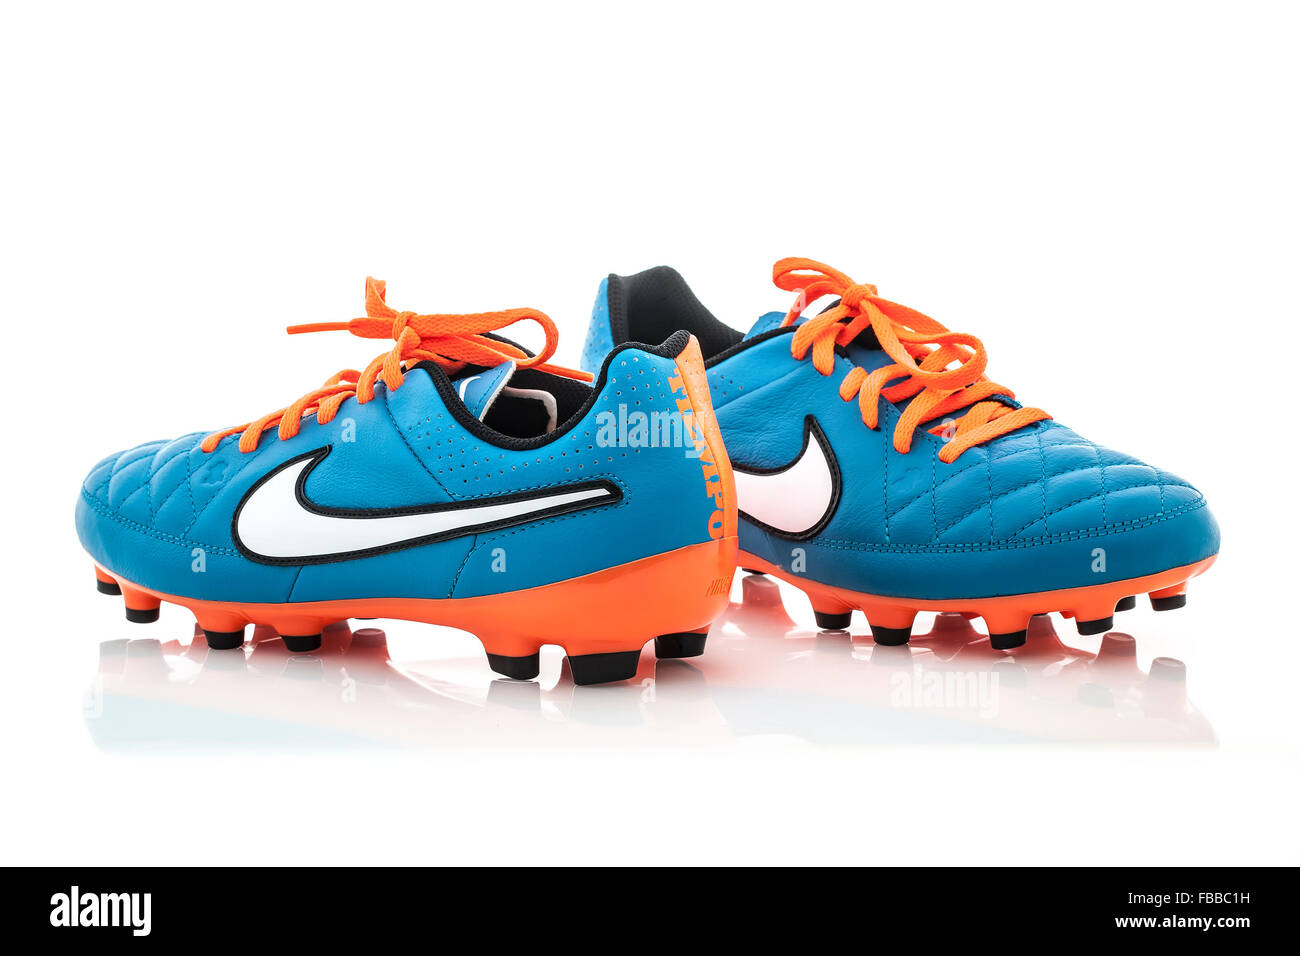 Ein paar Nike Fußballschuhe auf weißem Hintergrund Stockfotografie - Alamy